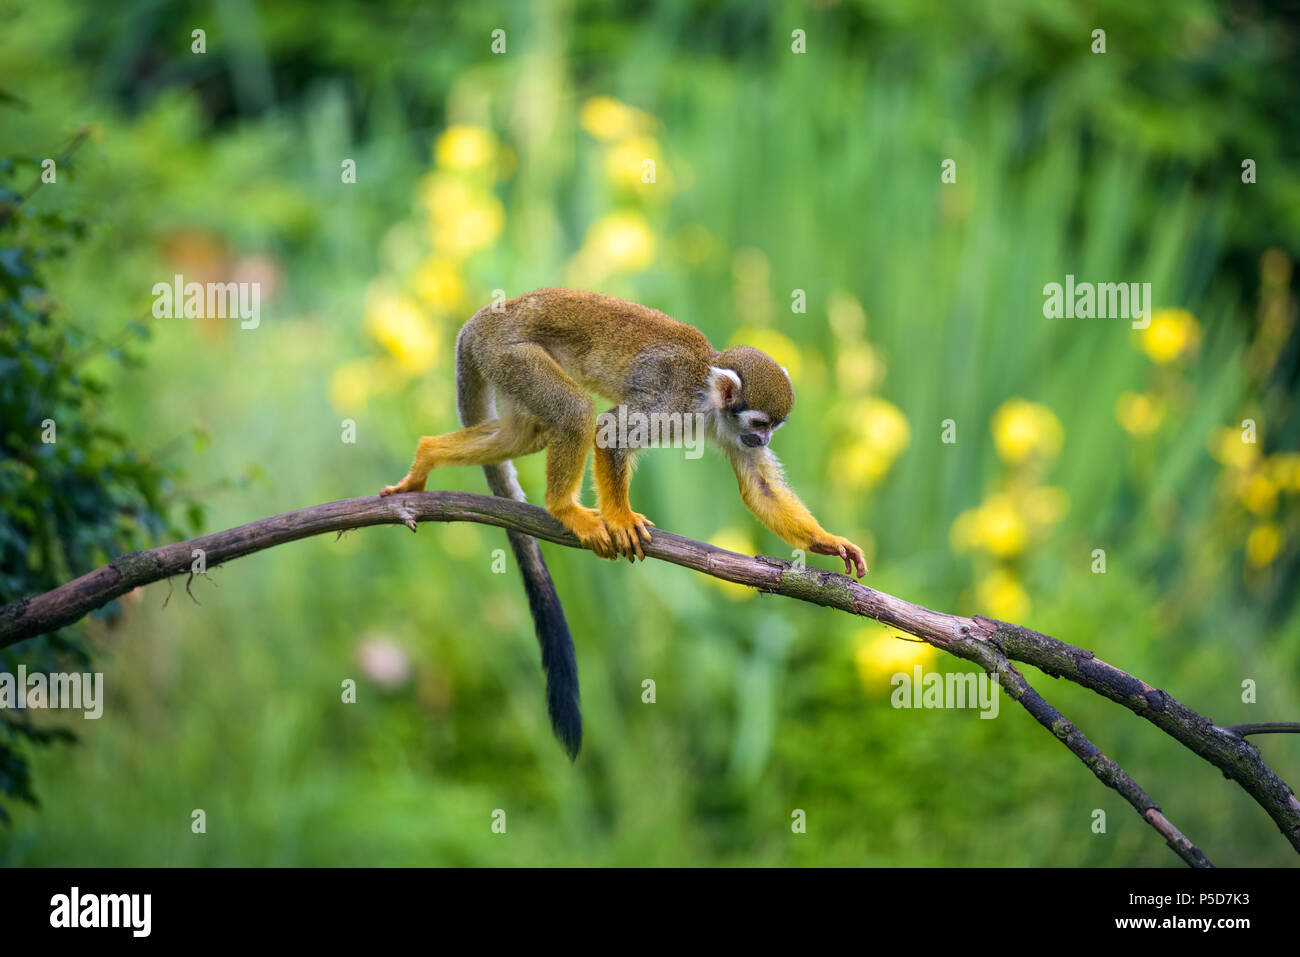 Mono ardilla común caminando sobre una rama de árbol Foto de stock